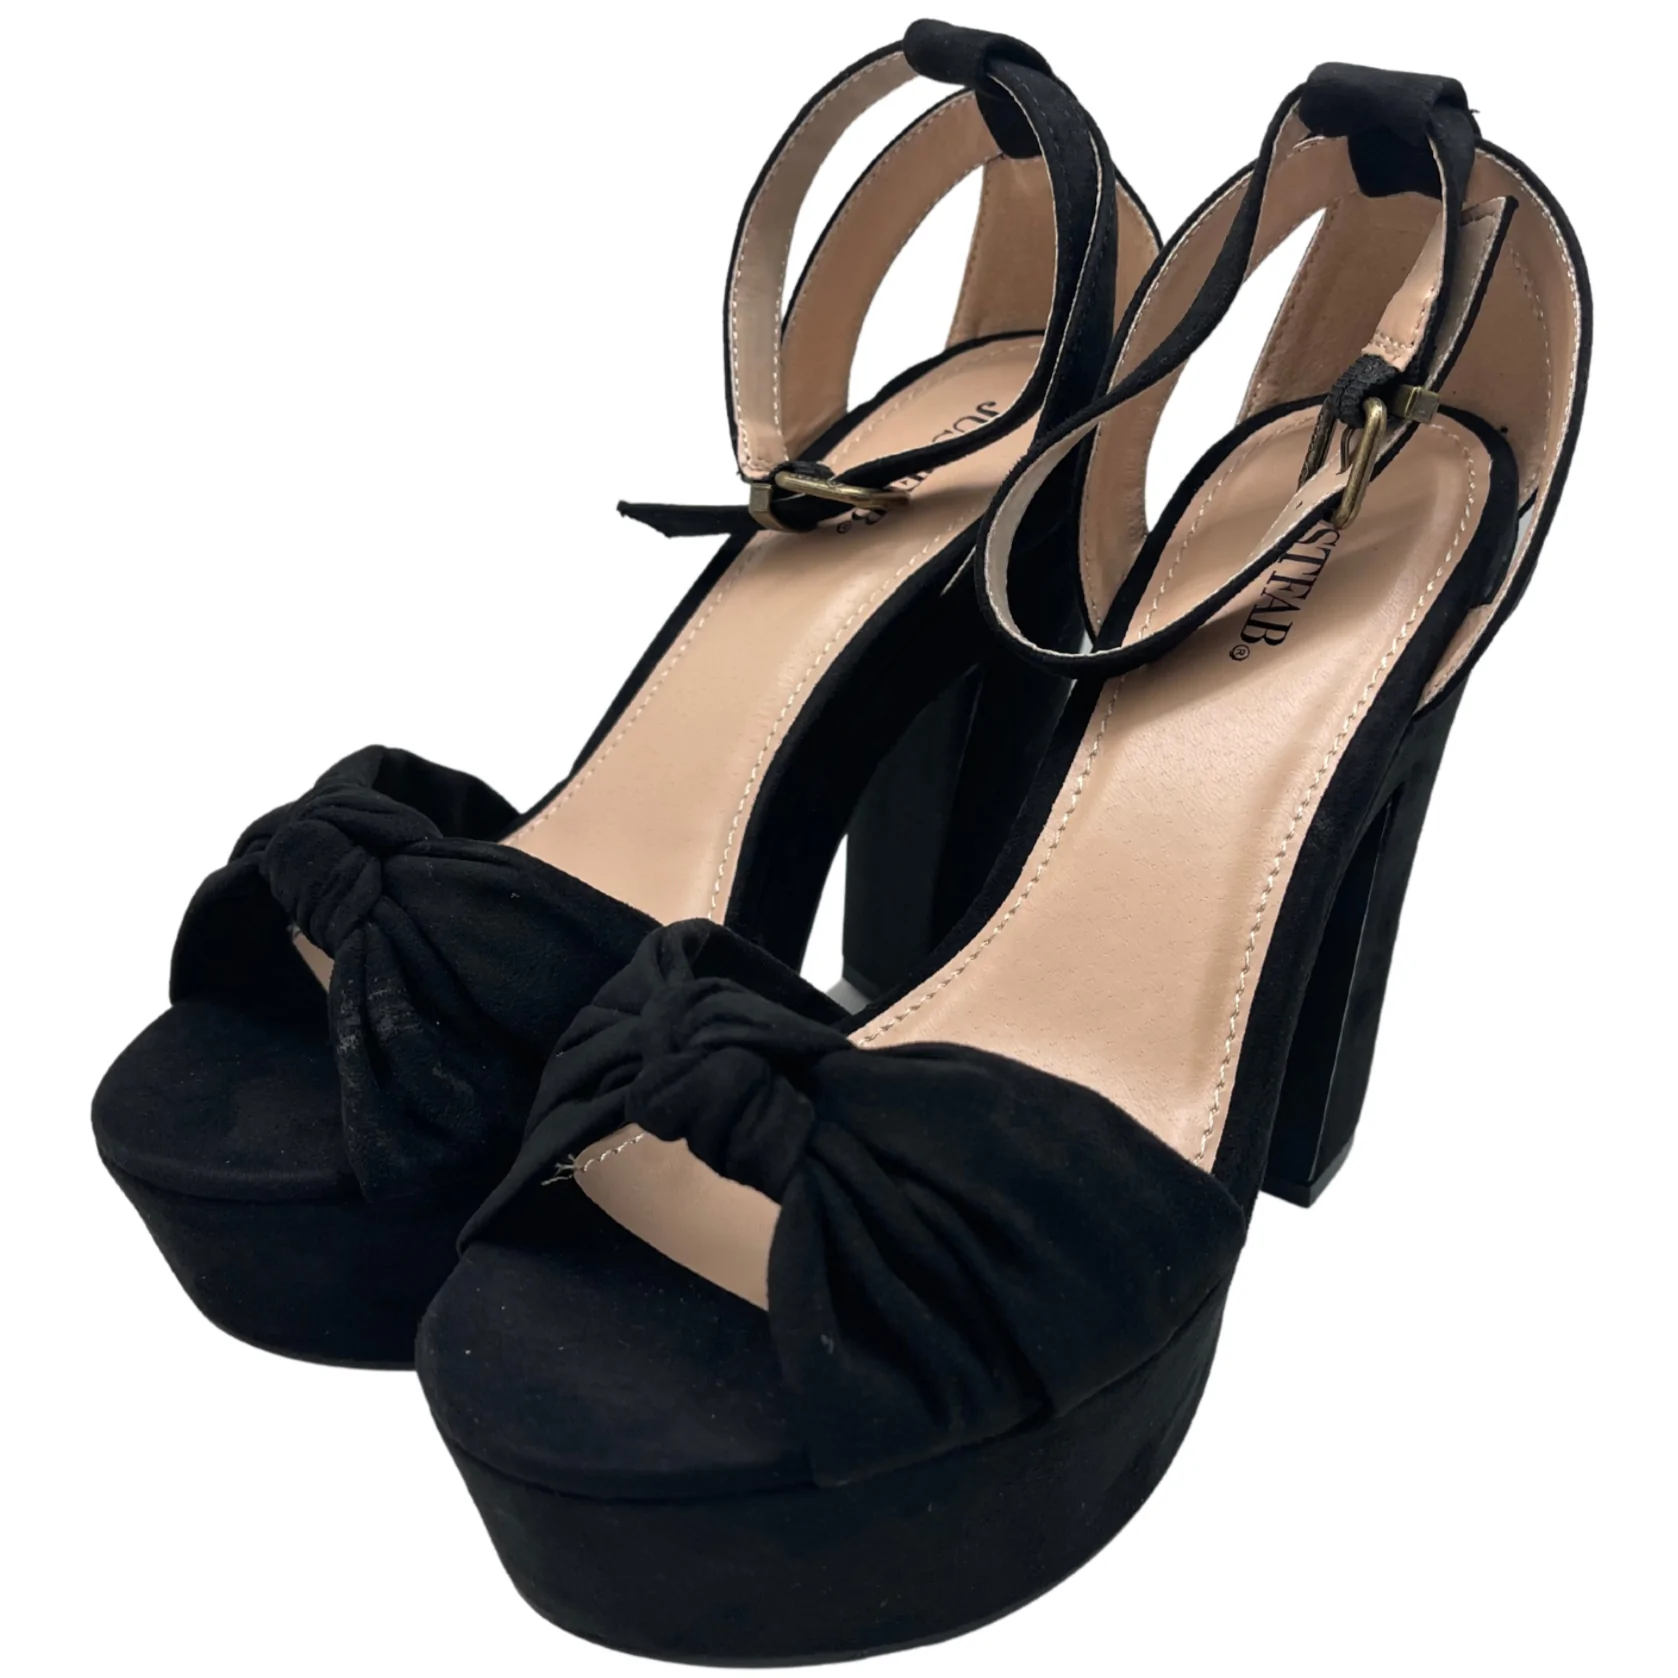 JustFab Women's Heels / Lawren / Black Pumps / 5.5" Heel / Size 8.5